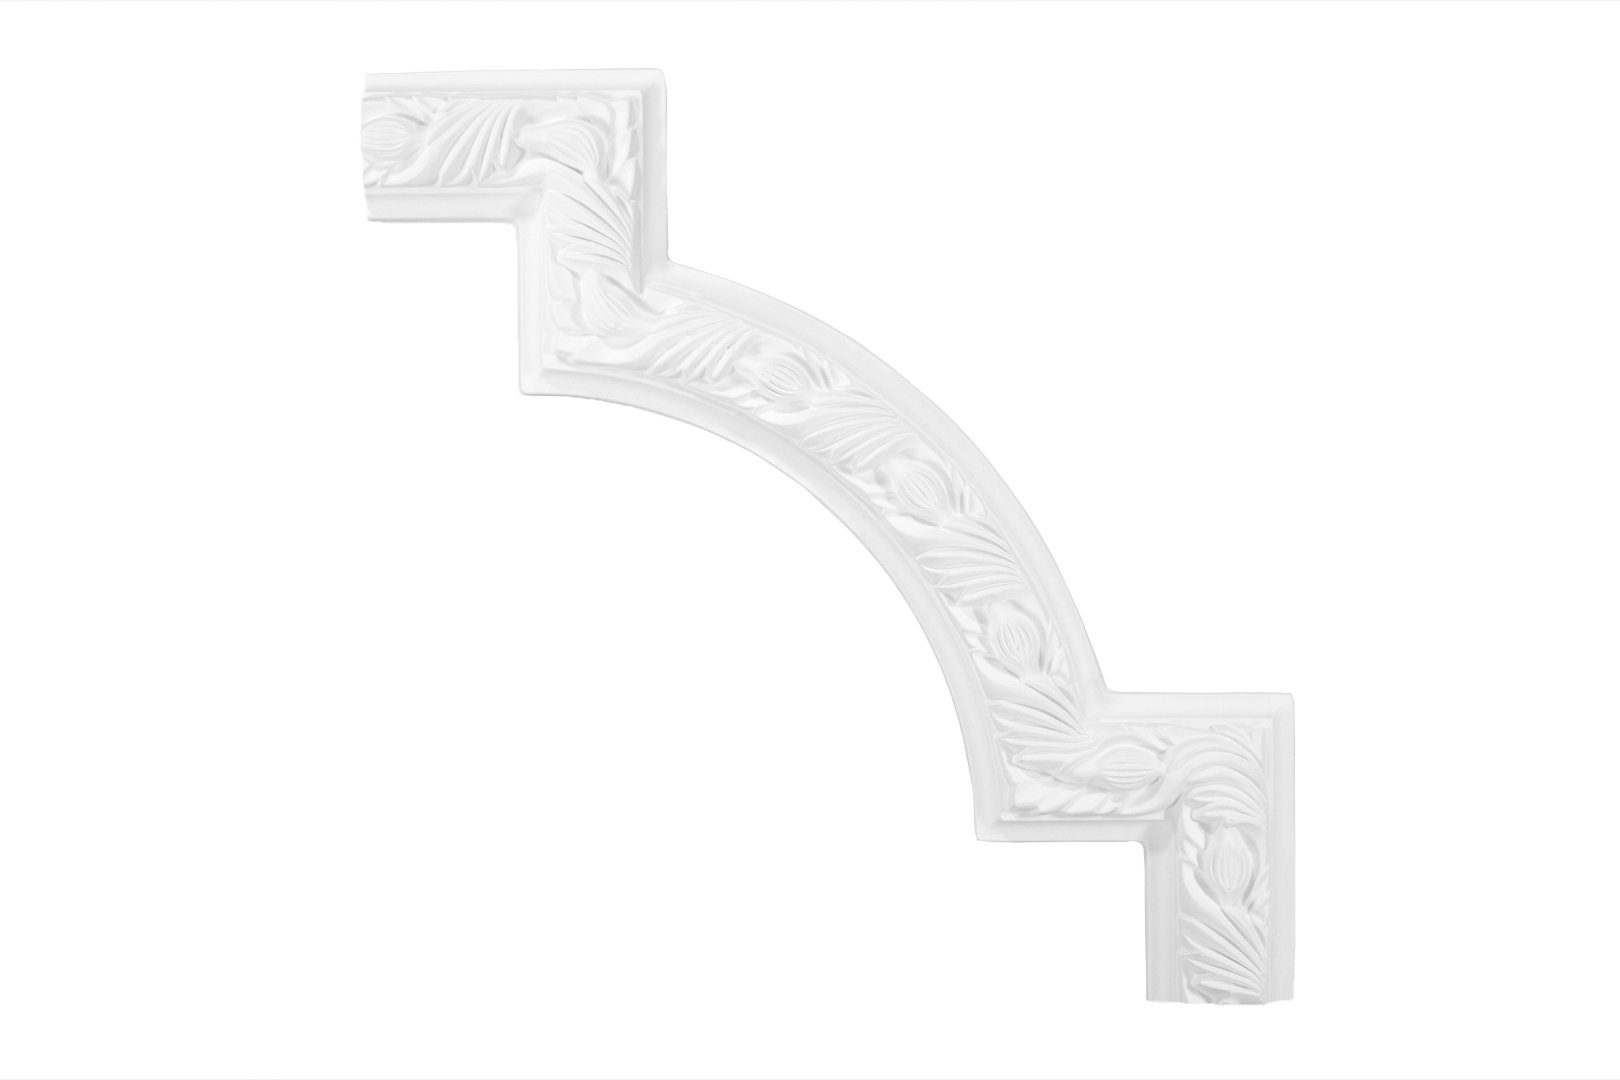 Grand Decor Stuckleiste M129-4, Wand- und Deckenumrandung aus PU - Segment als Ergänzung zur Flachleiste, hart & stoßfest, weiß - Spiegelrahmen M129-4 / 324x19mm